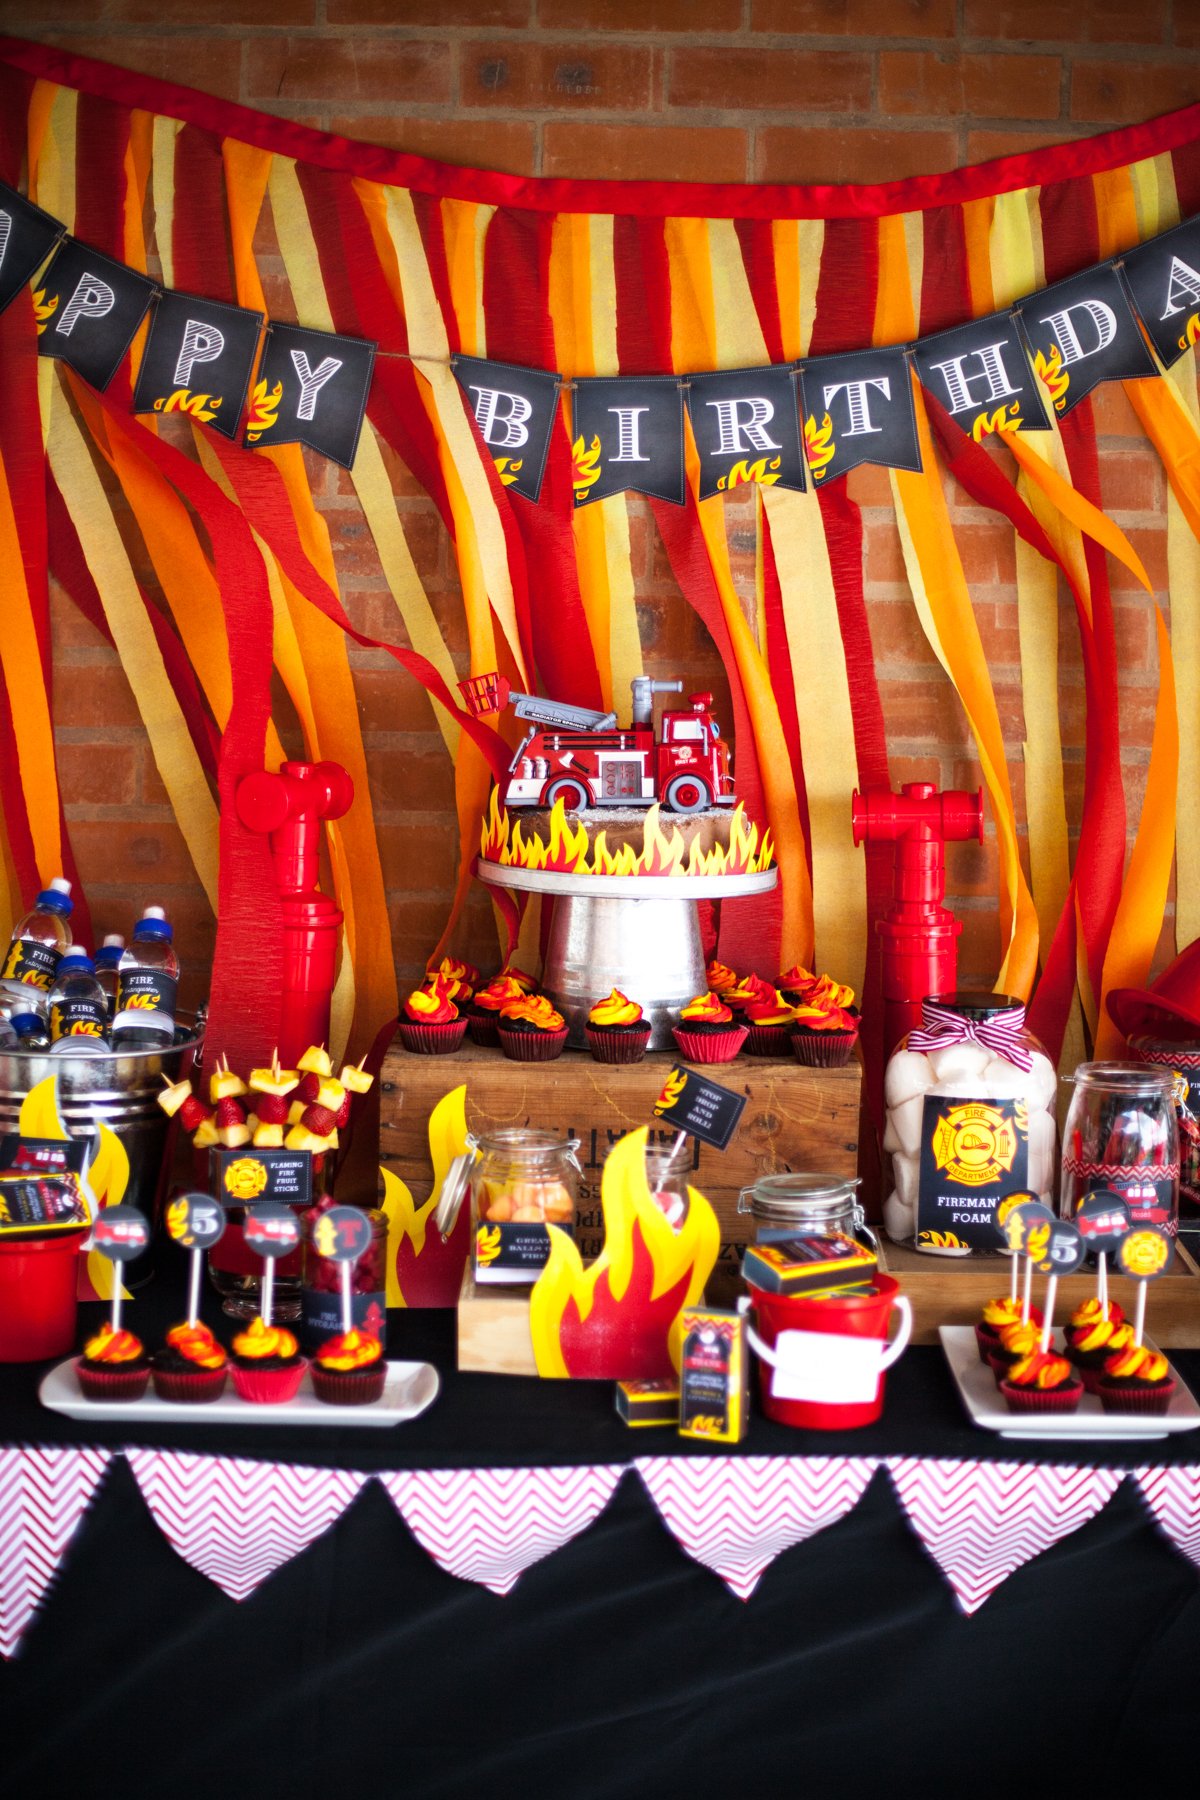 День рождения в стиле игр. Кенди бар Пиратская вечеринка. Украшения для вечеринки день рождения. Др в стиле пожарного. Вечеринка в стиле пожарных.